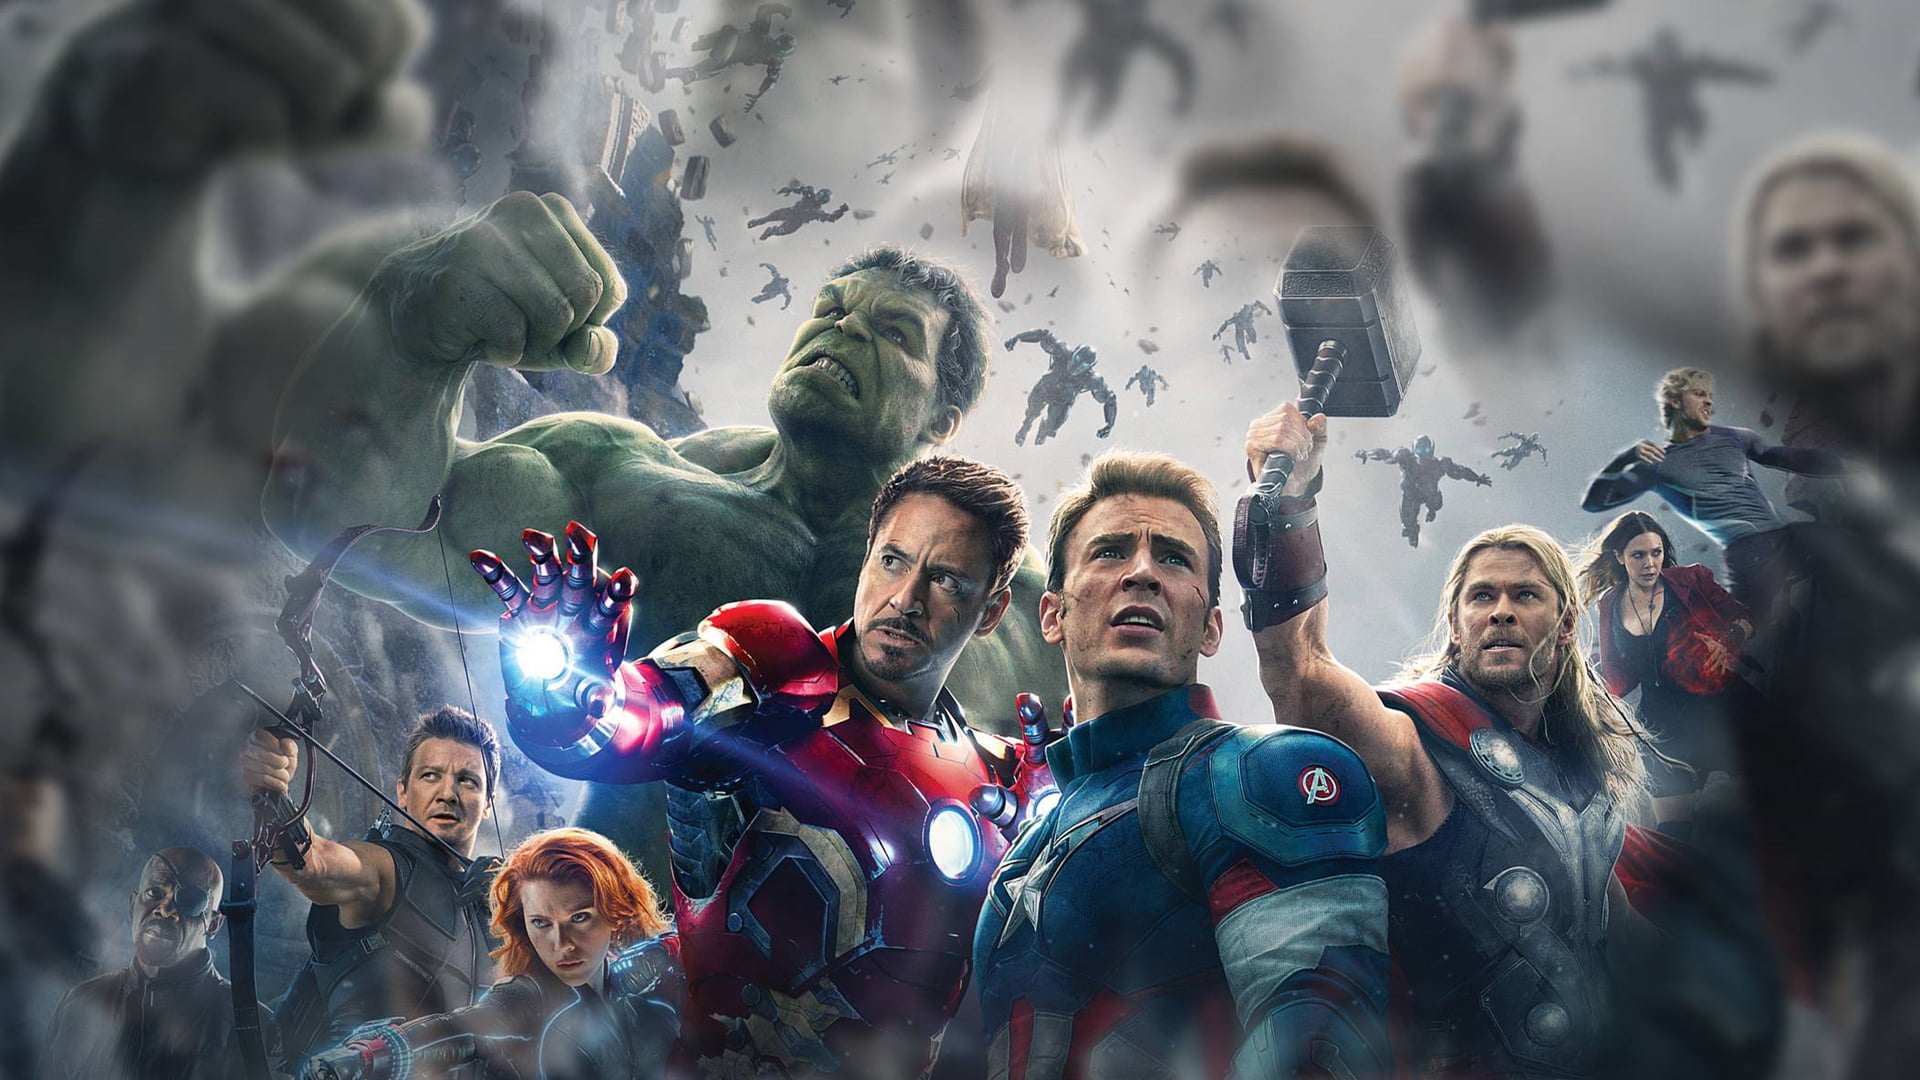 Marvel Avengers, Avengers: Age of Ultron, movie poster, Captain America